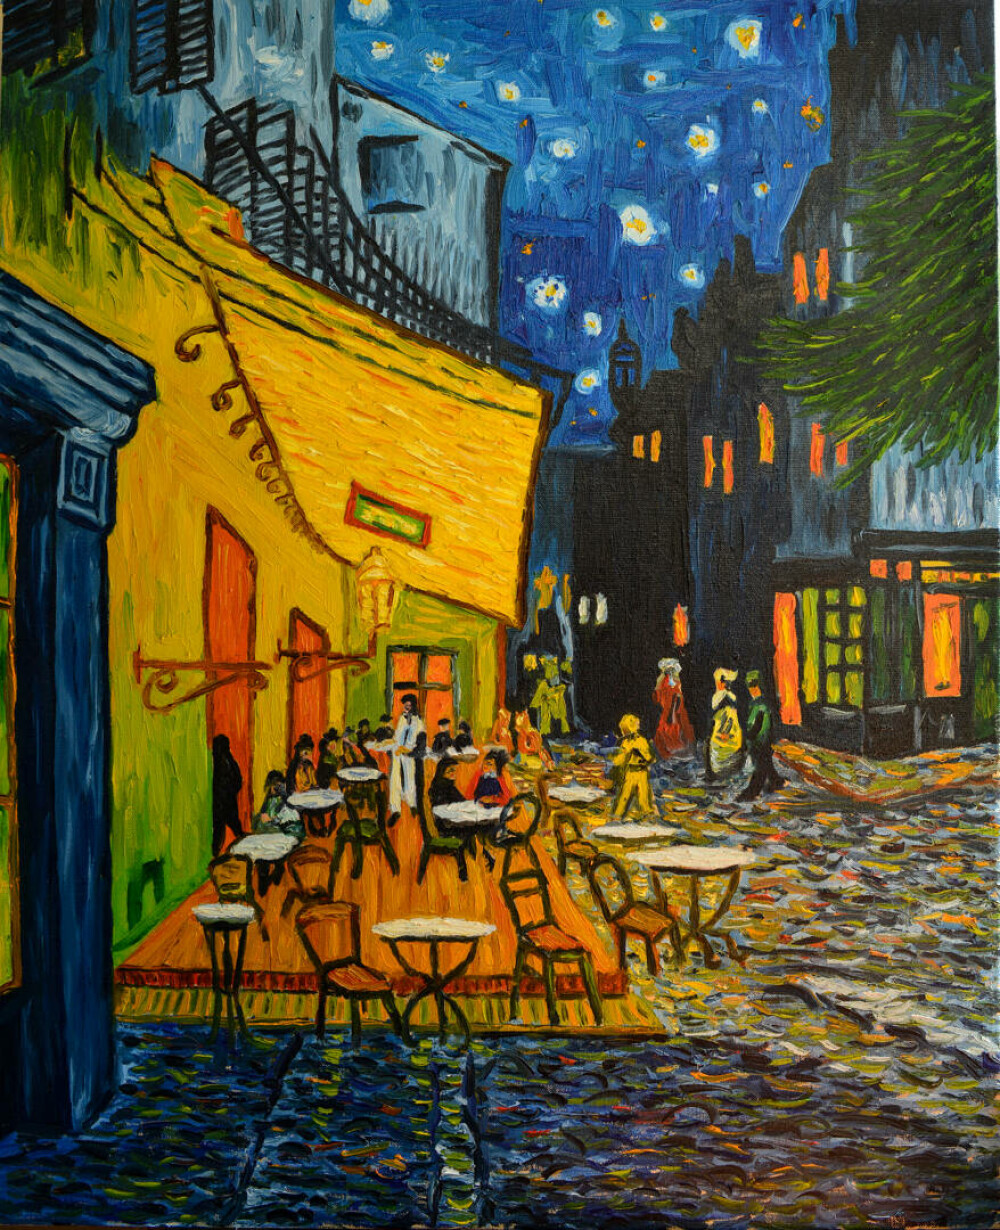 Viața lui Vincent van Gogh. Curiozități despre unul dintre cei mai mari pictori din toate timpurile - Imaginea 6